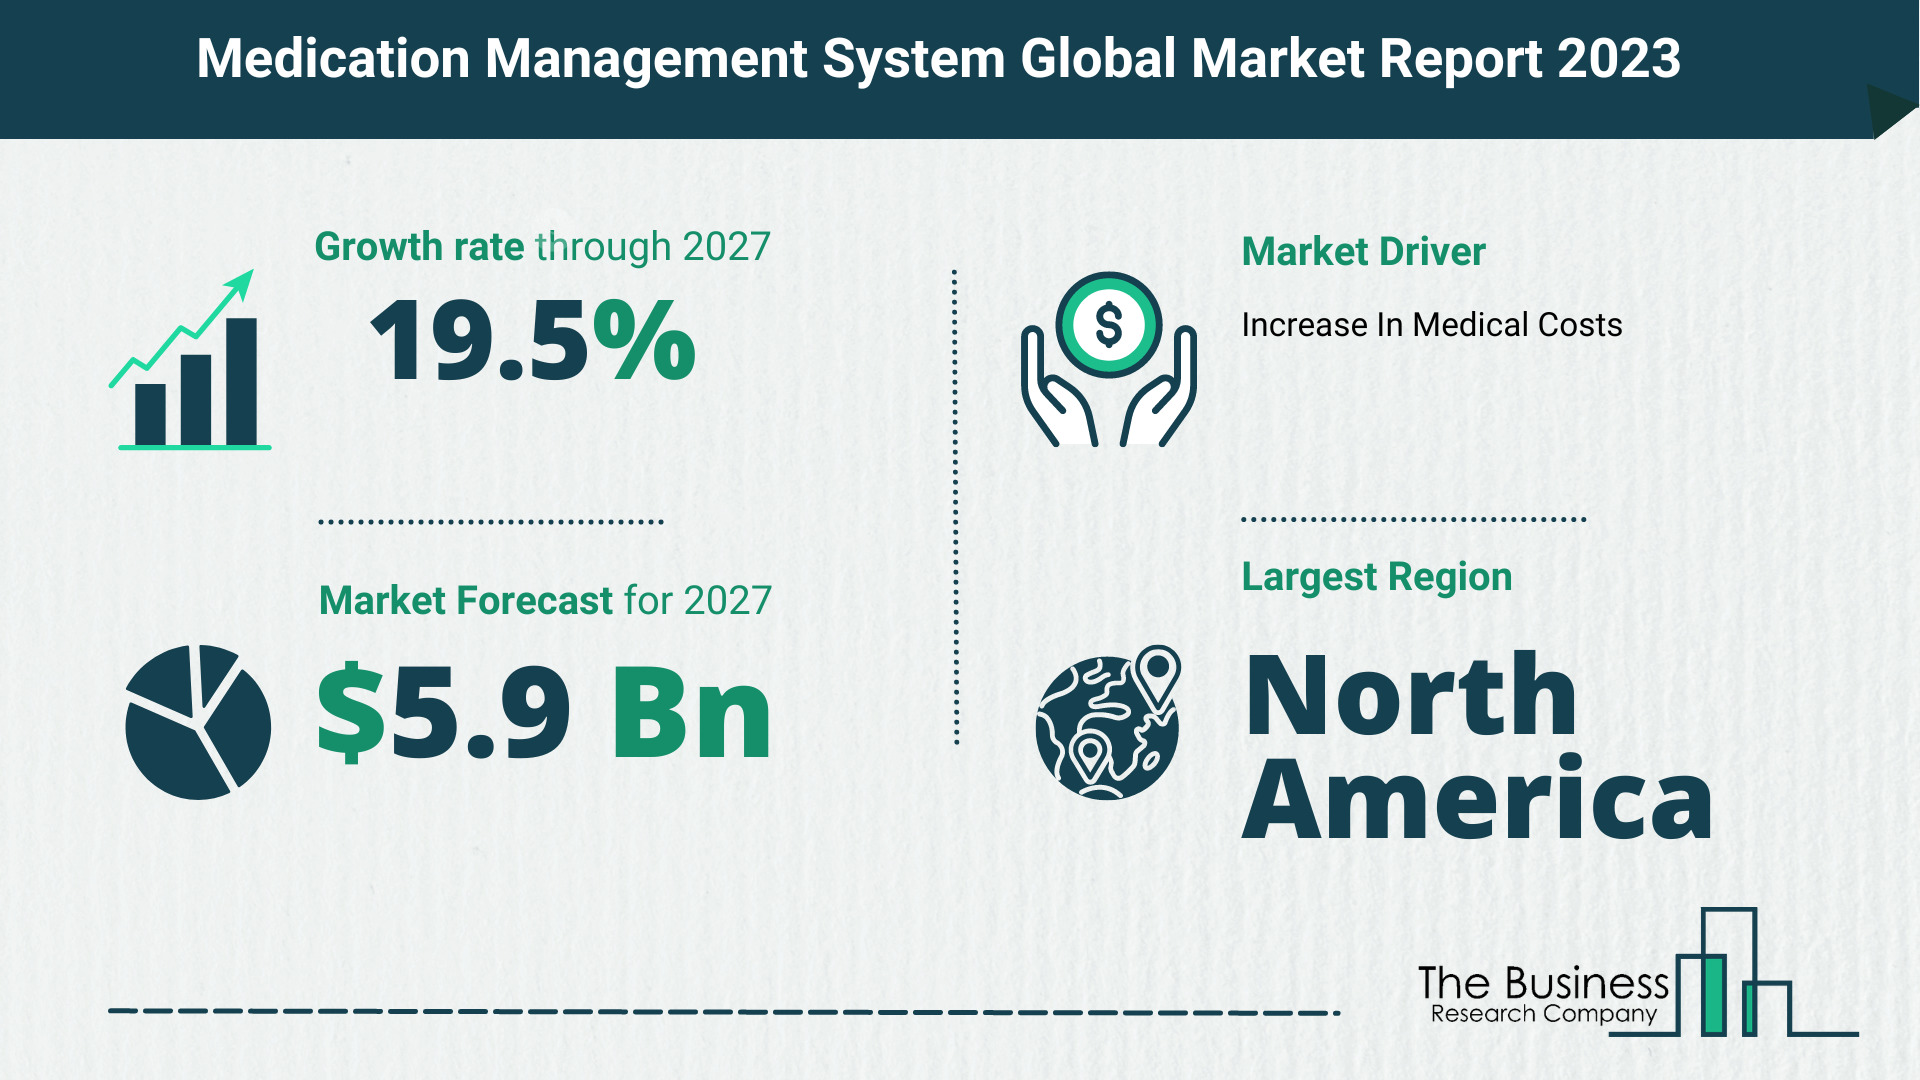 Global Medication Management System Market